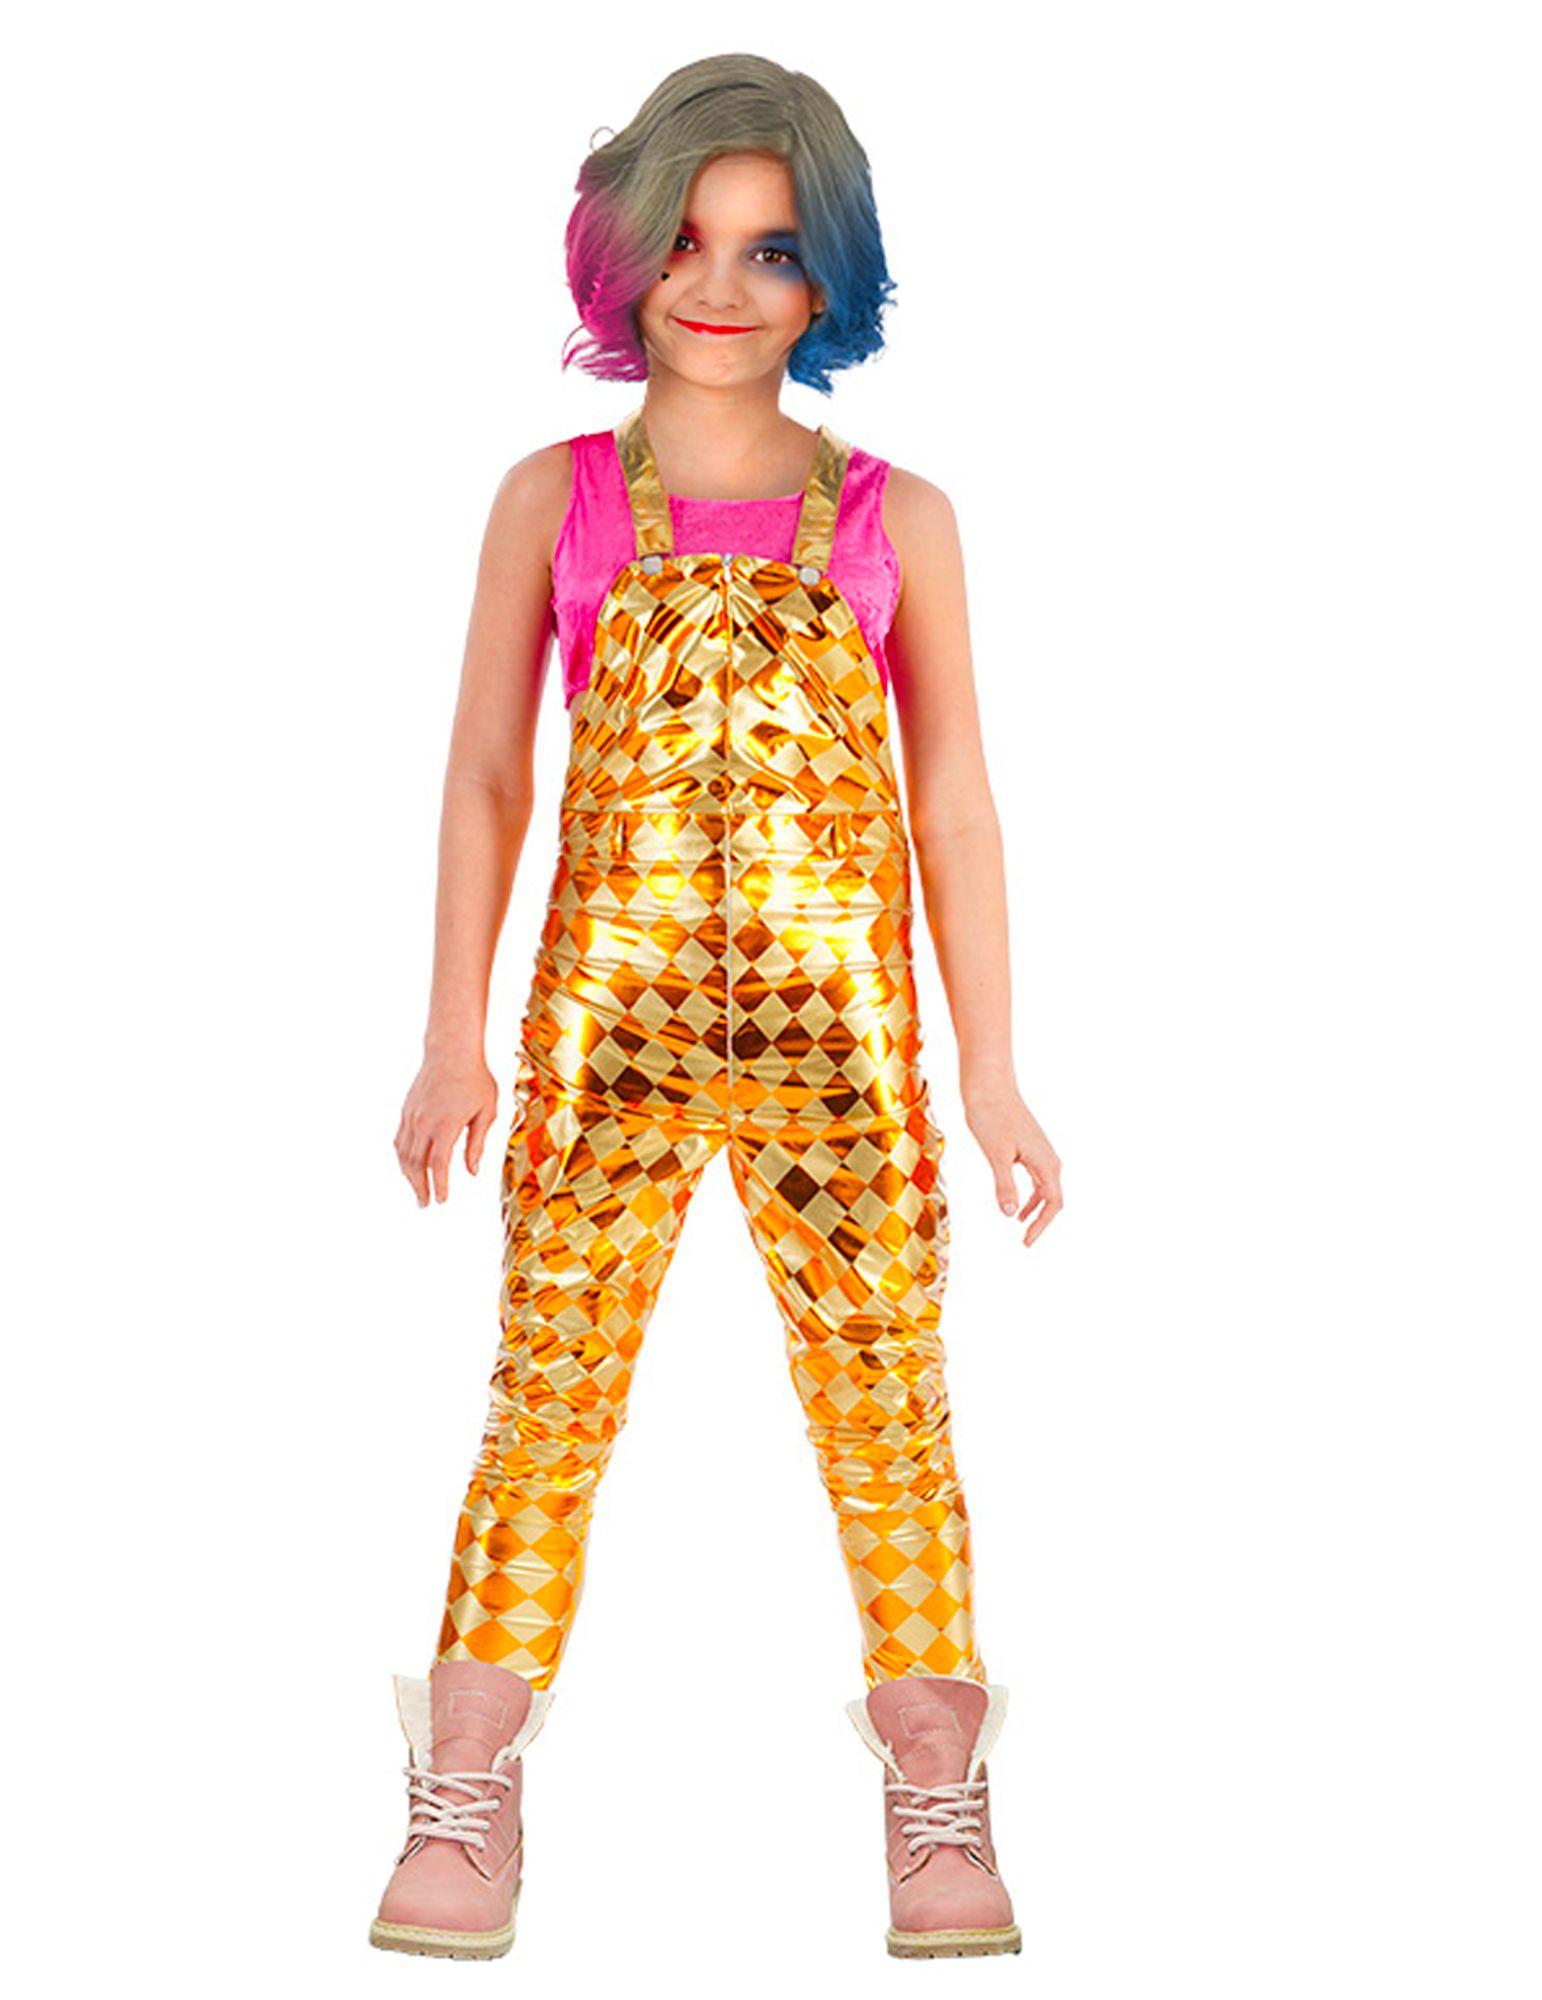 Costumes Barbie à la mode pour fête adulte, vêtements de jeu de rôle pour  filles, tenue Parent-enfant, vêtements de princesse Cosplay Barbie - Enfants  (140-150 cm) - Perruque